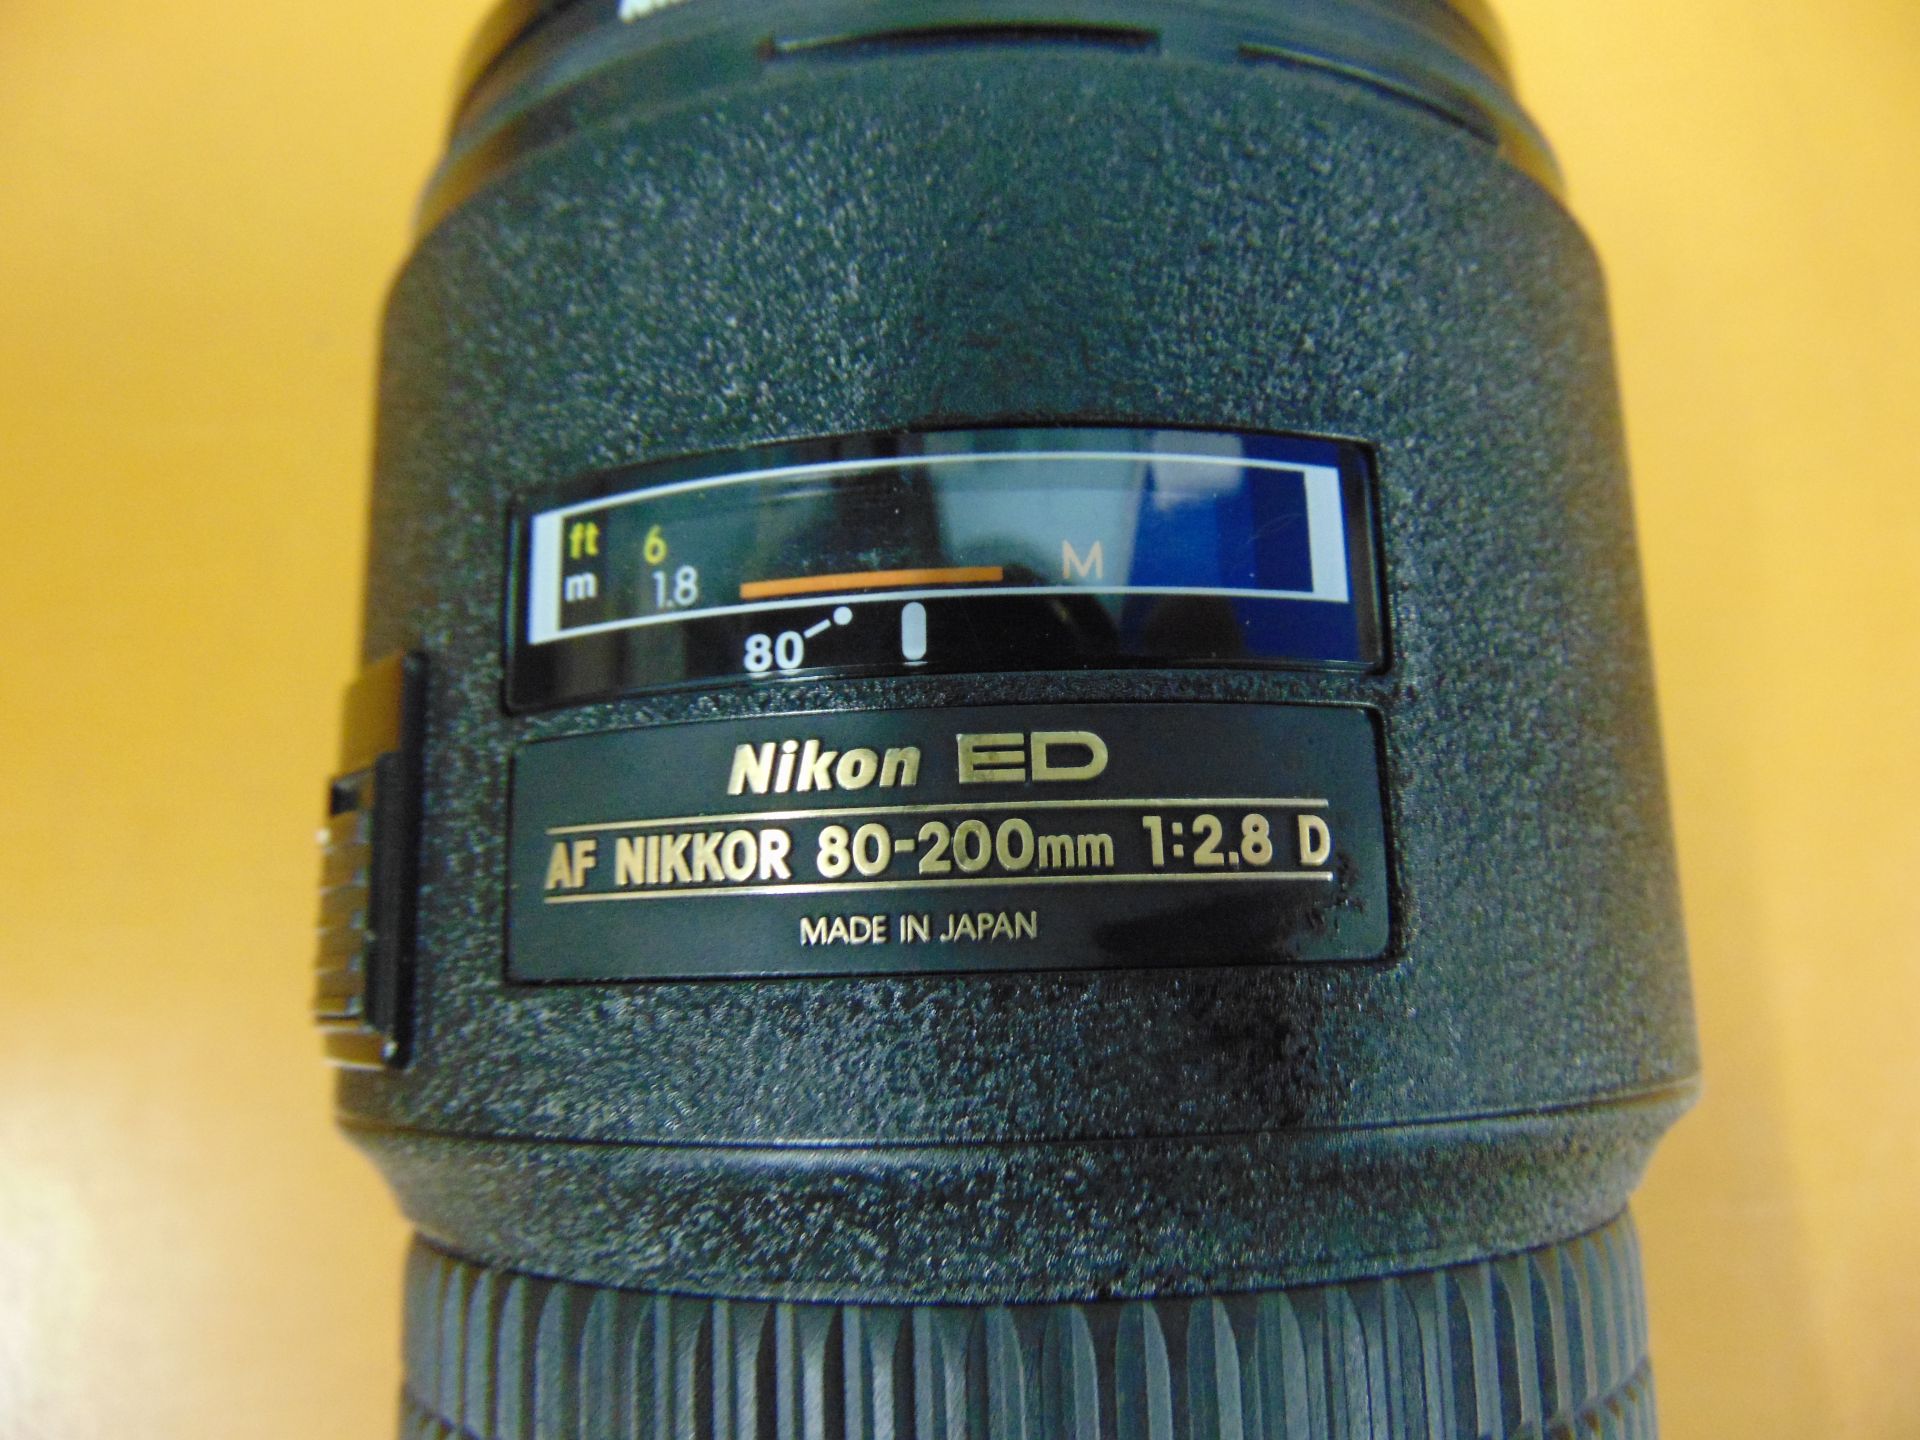 Nikon ED AF Nikkor 80-200mm 1:2.8 D Lense with Leather Carry Case - Image 3 of 8